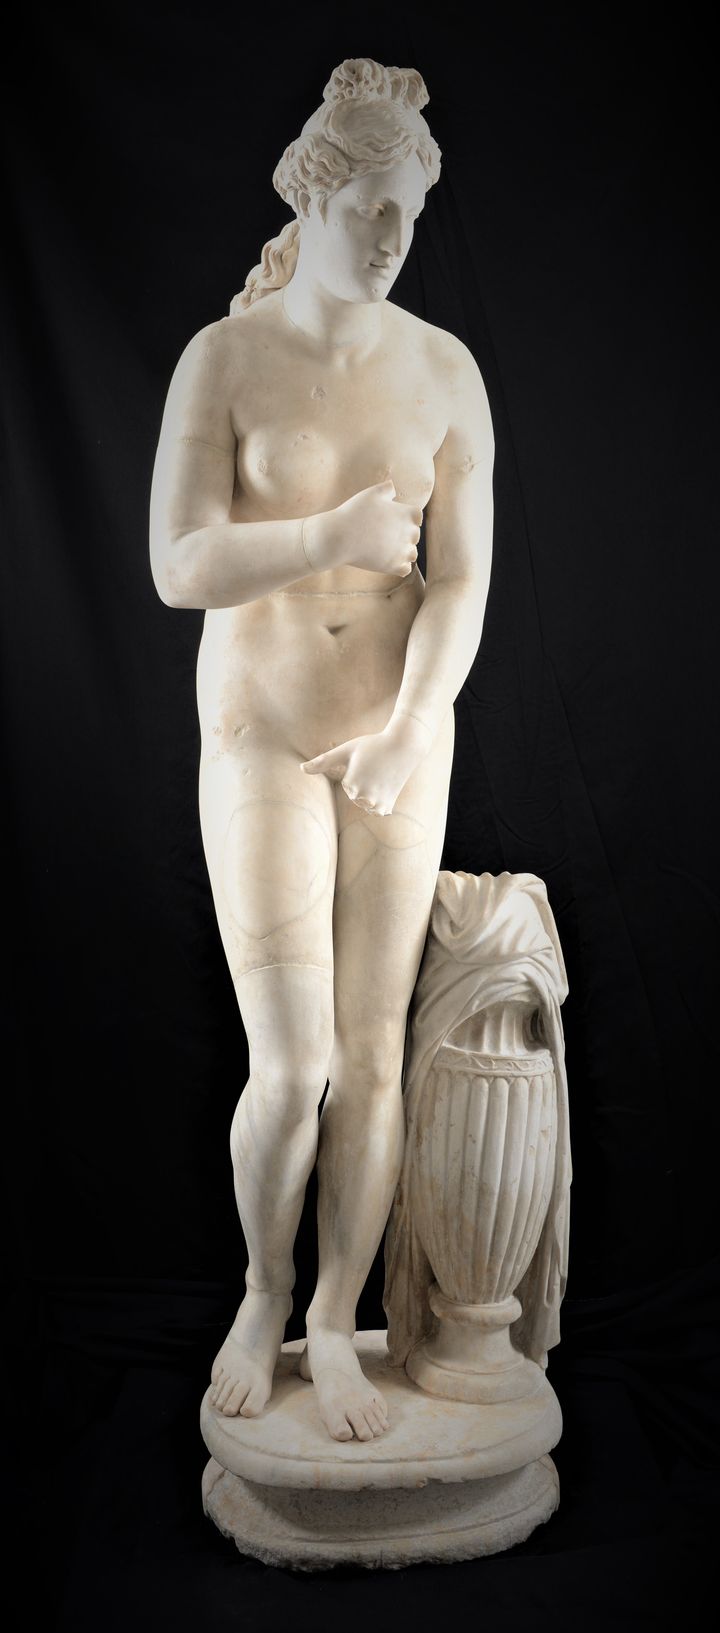 Άγαλμα Αφροδίτης στον τύπο του Καπιτωλίου. Έργο ρωμαϊκών χρόνων (© Εθνικό Αρχαιολογικό Μουσείο/TAΠΑ).